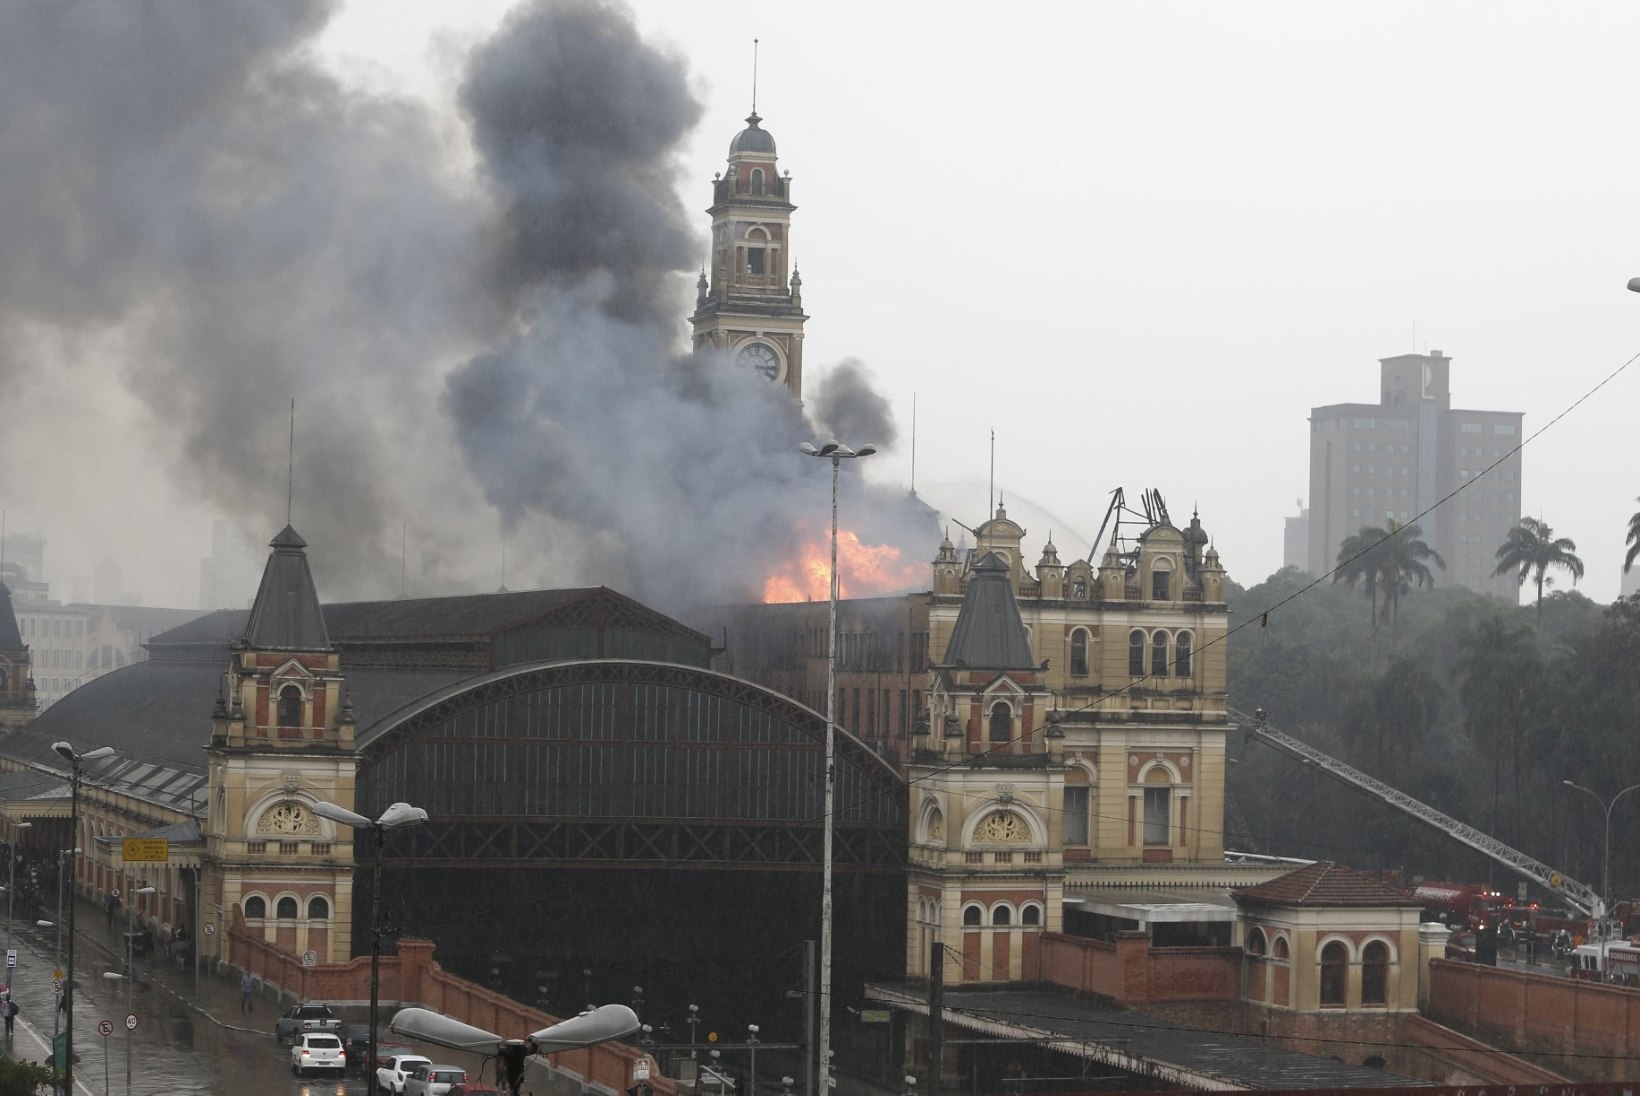 FOTOD | Sao Paulos hävitas tuli suure osa ajaloomuuseumist